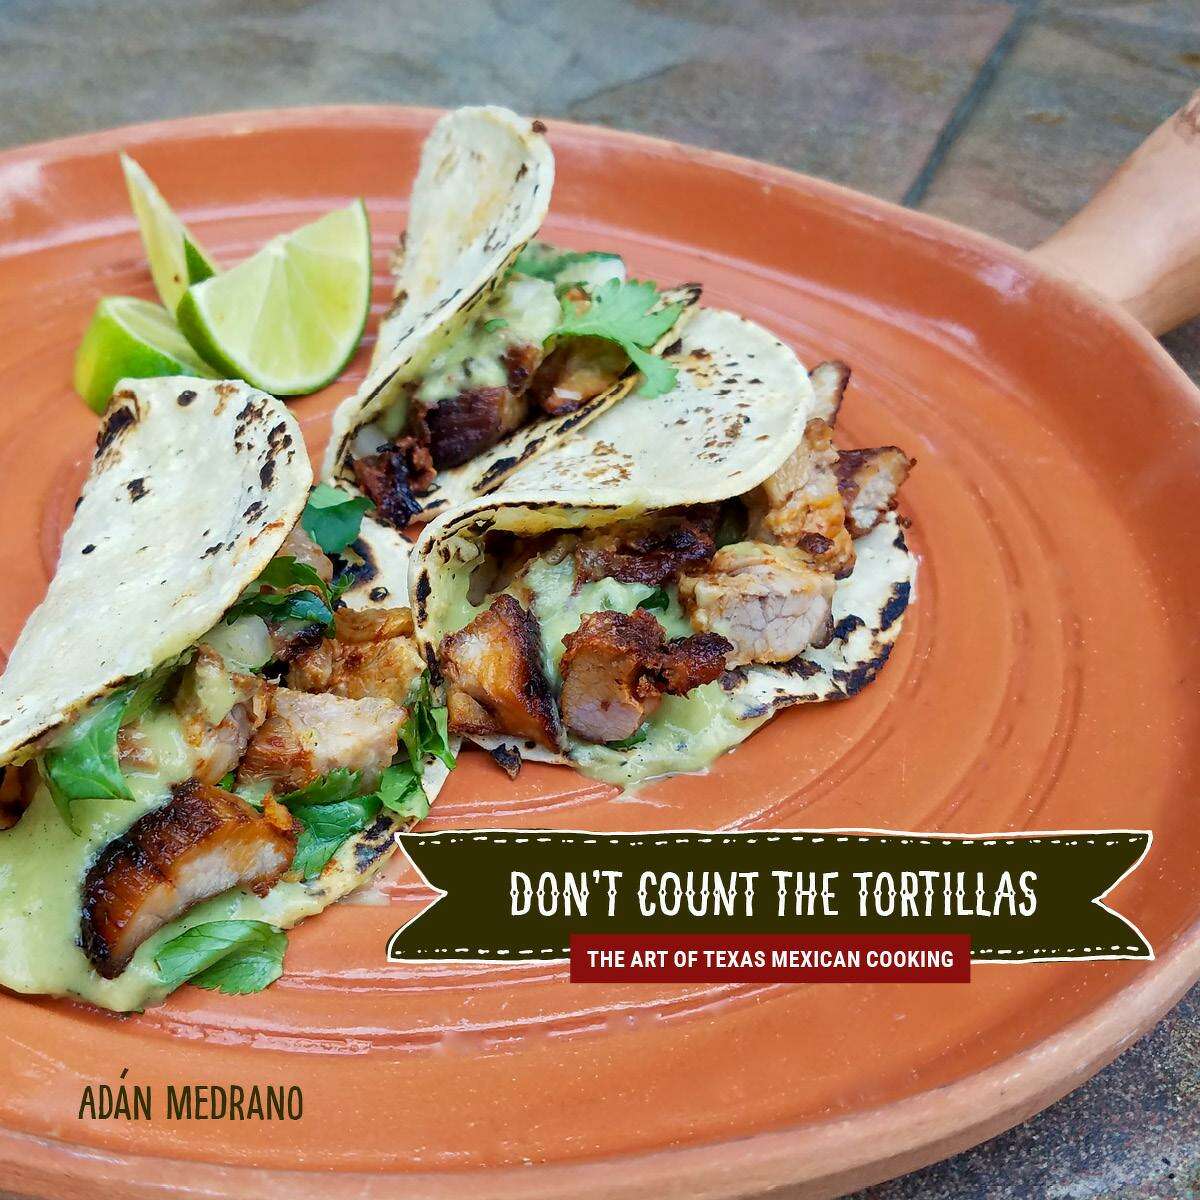 “Don’t Count the Tortillas” by Adán Medrano (Texas Tech University Press)